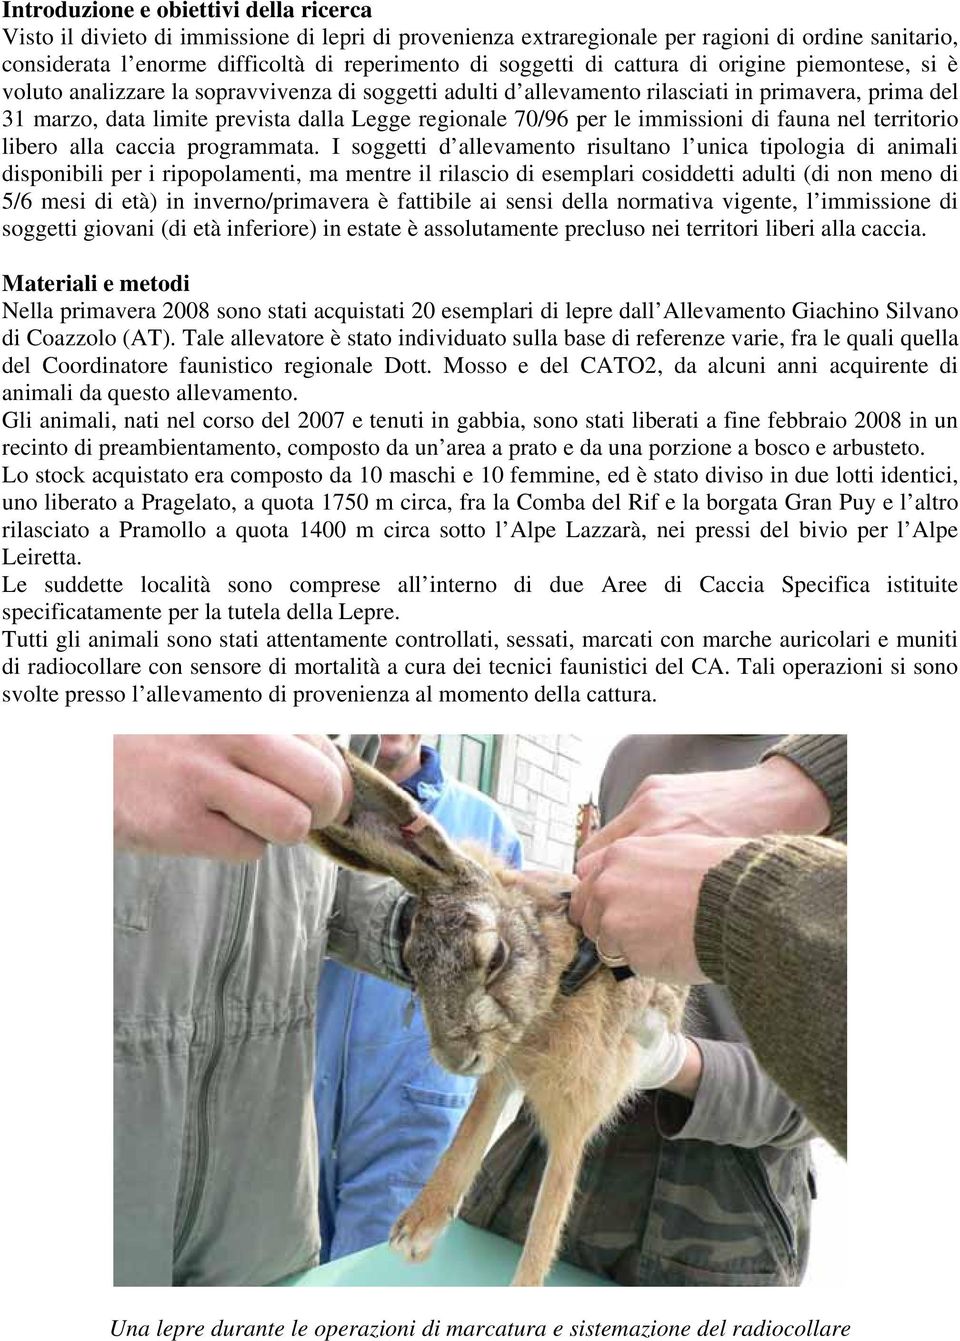 regionale 70/96 per le immissioni di fauna nel territorio libero alla caccia programmata.